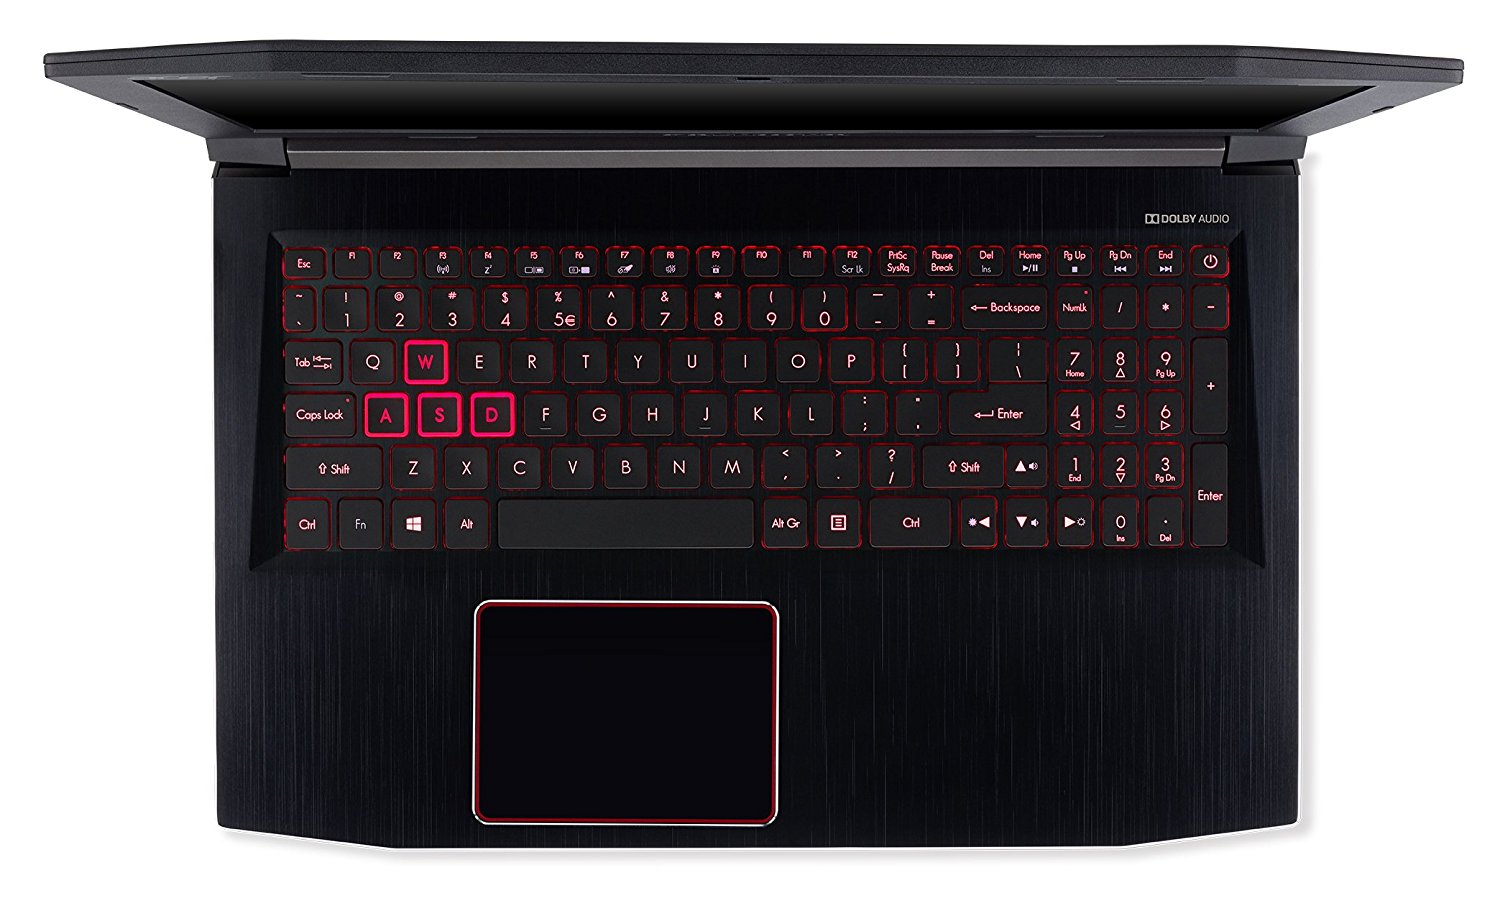 Acer Predator Helios 300 review (PH315-51 model - Core i7-8750H, GTX 1060,  144 Hz screen)